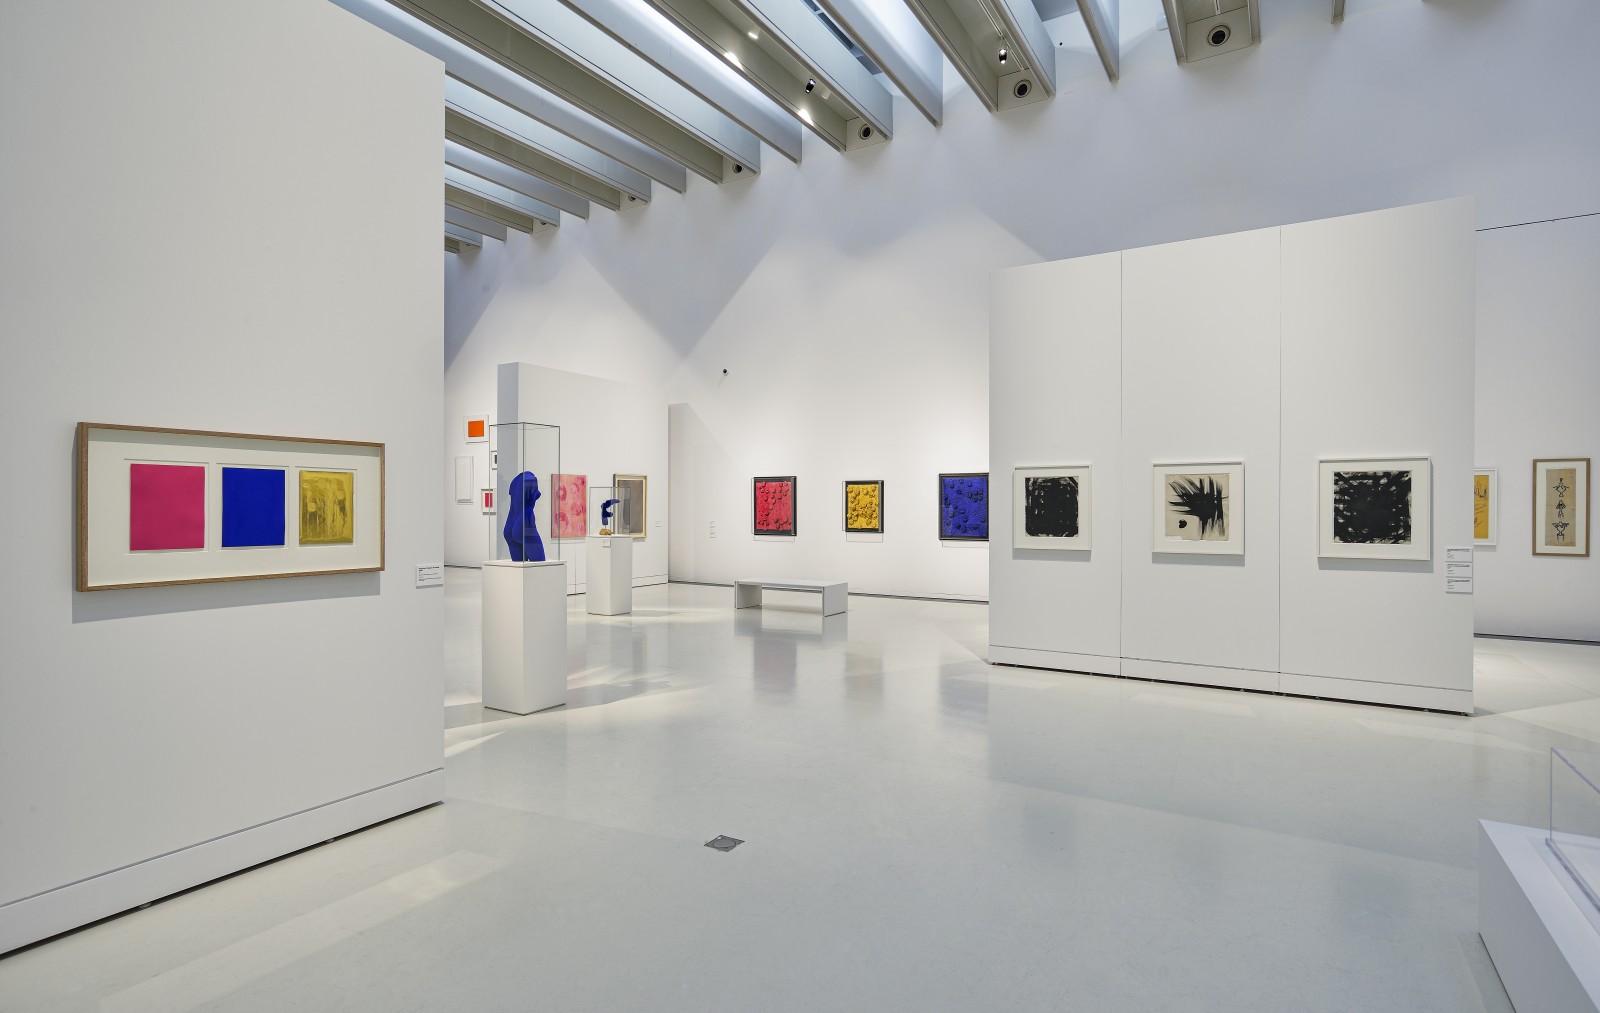 Vue de l'exposition, "Yves Klein - Des cris bleus", Musée Soulages, 2019